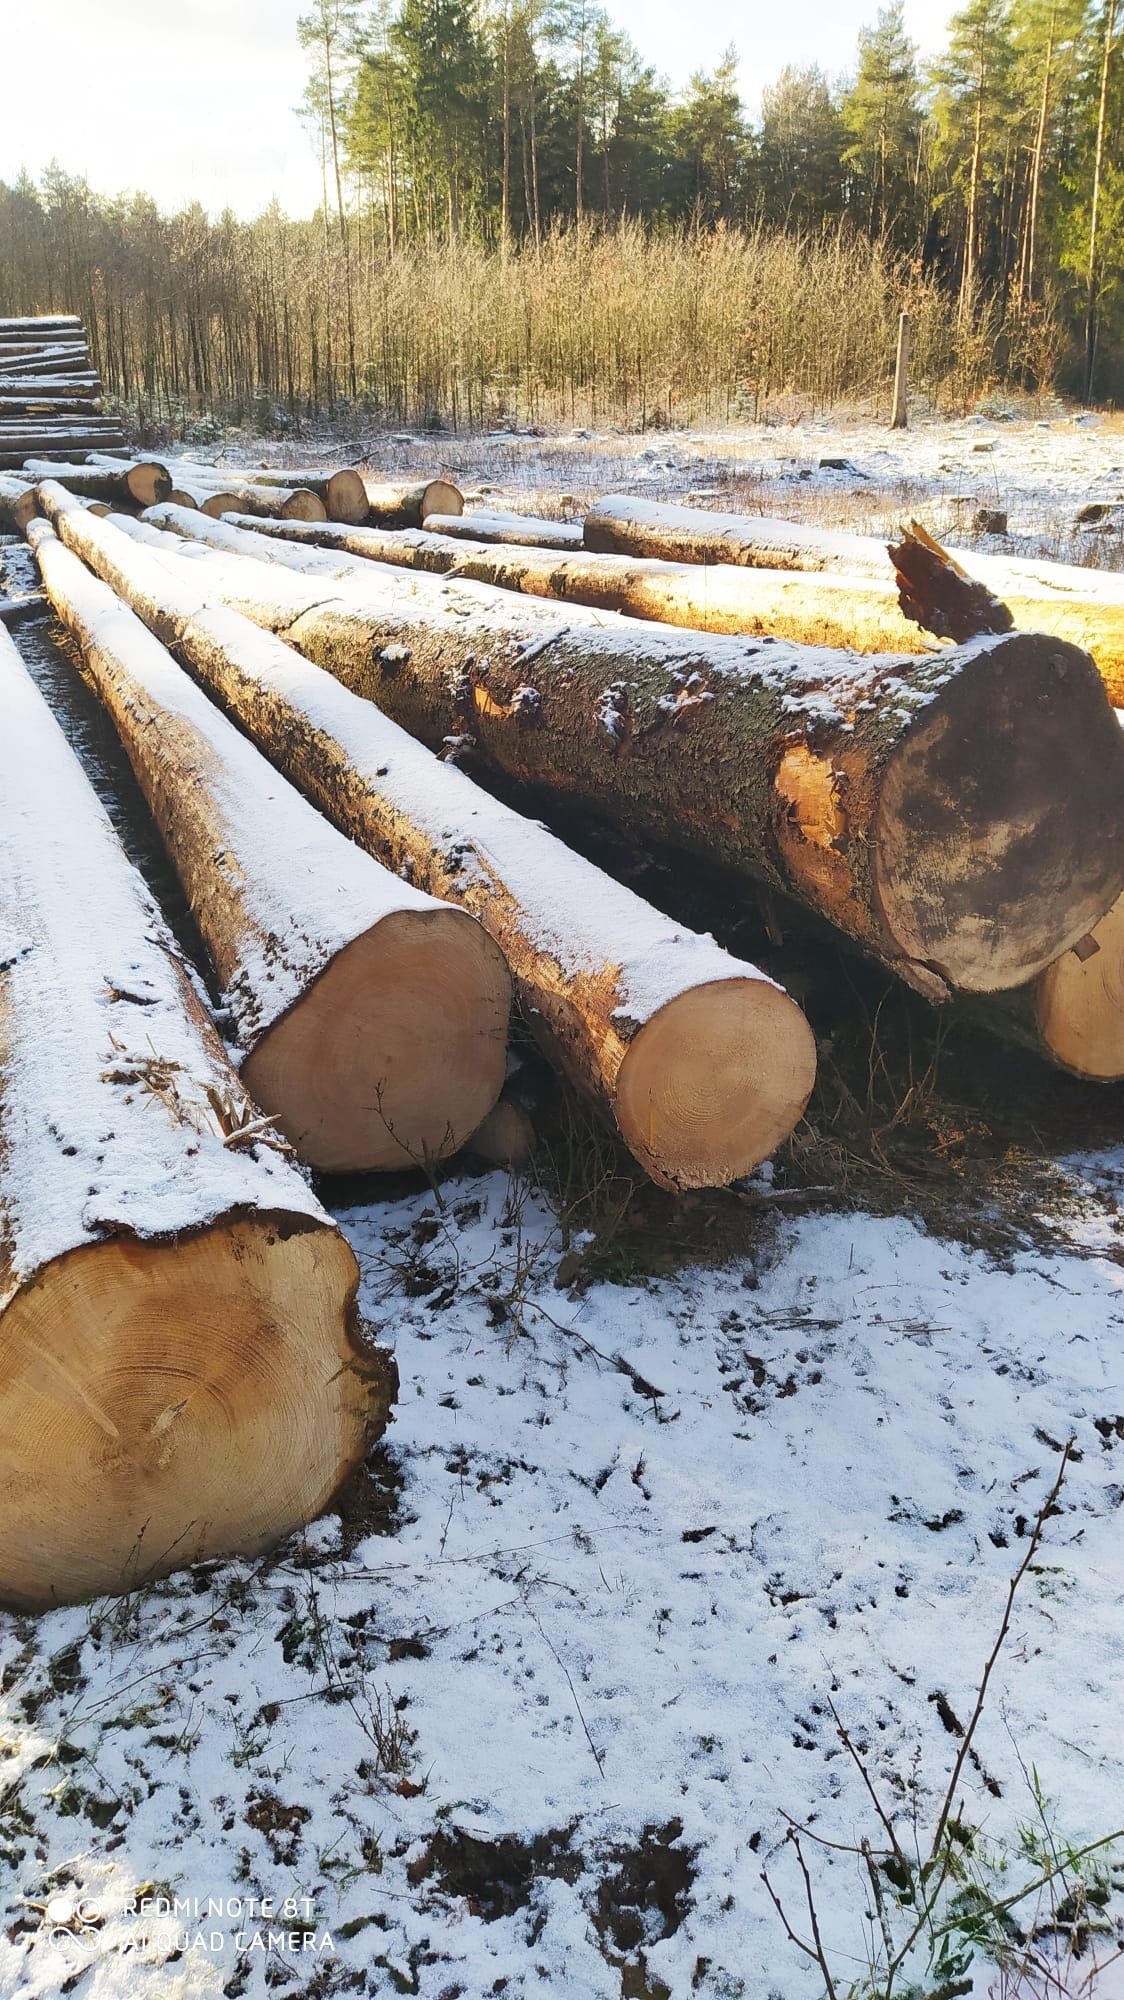 Sprzedam 22m3 drewna tartaczka świerk długość ponad 14m cena 650 zł m3